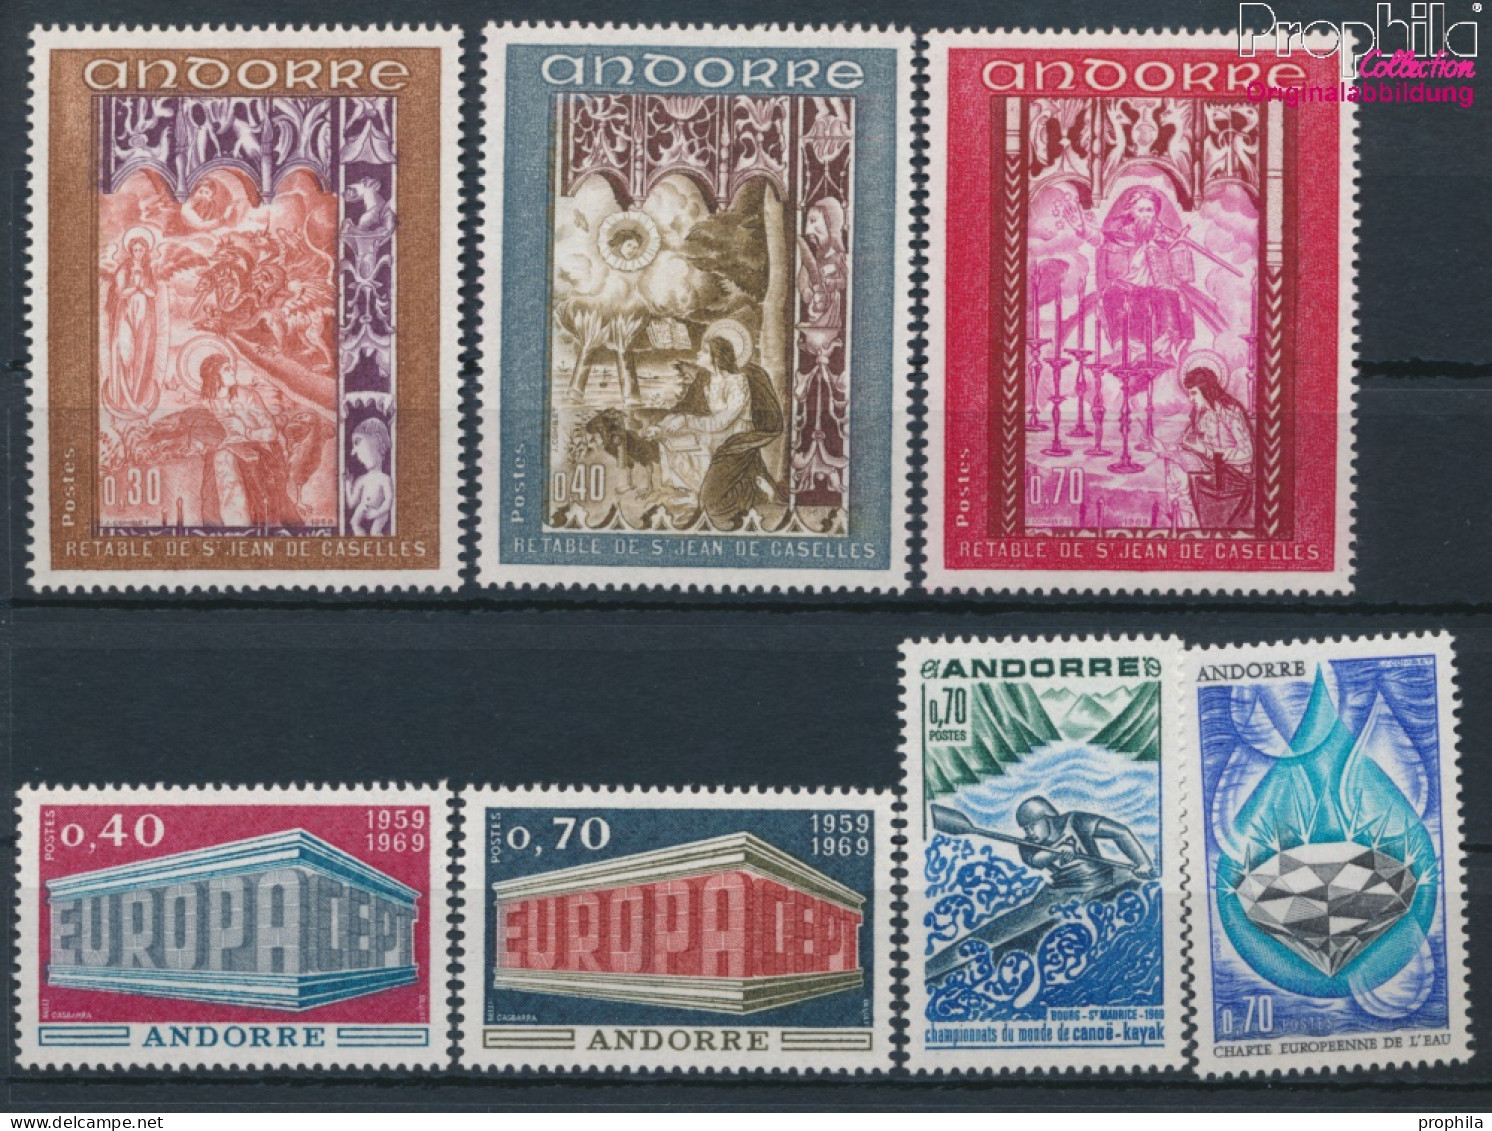 Andorra - Französische Post Postfrisch Europa 1969 Europa, Kanu, Wasserschutz, Fresken  (10368753 - Ungebraucht